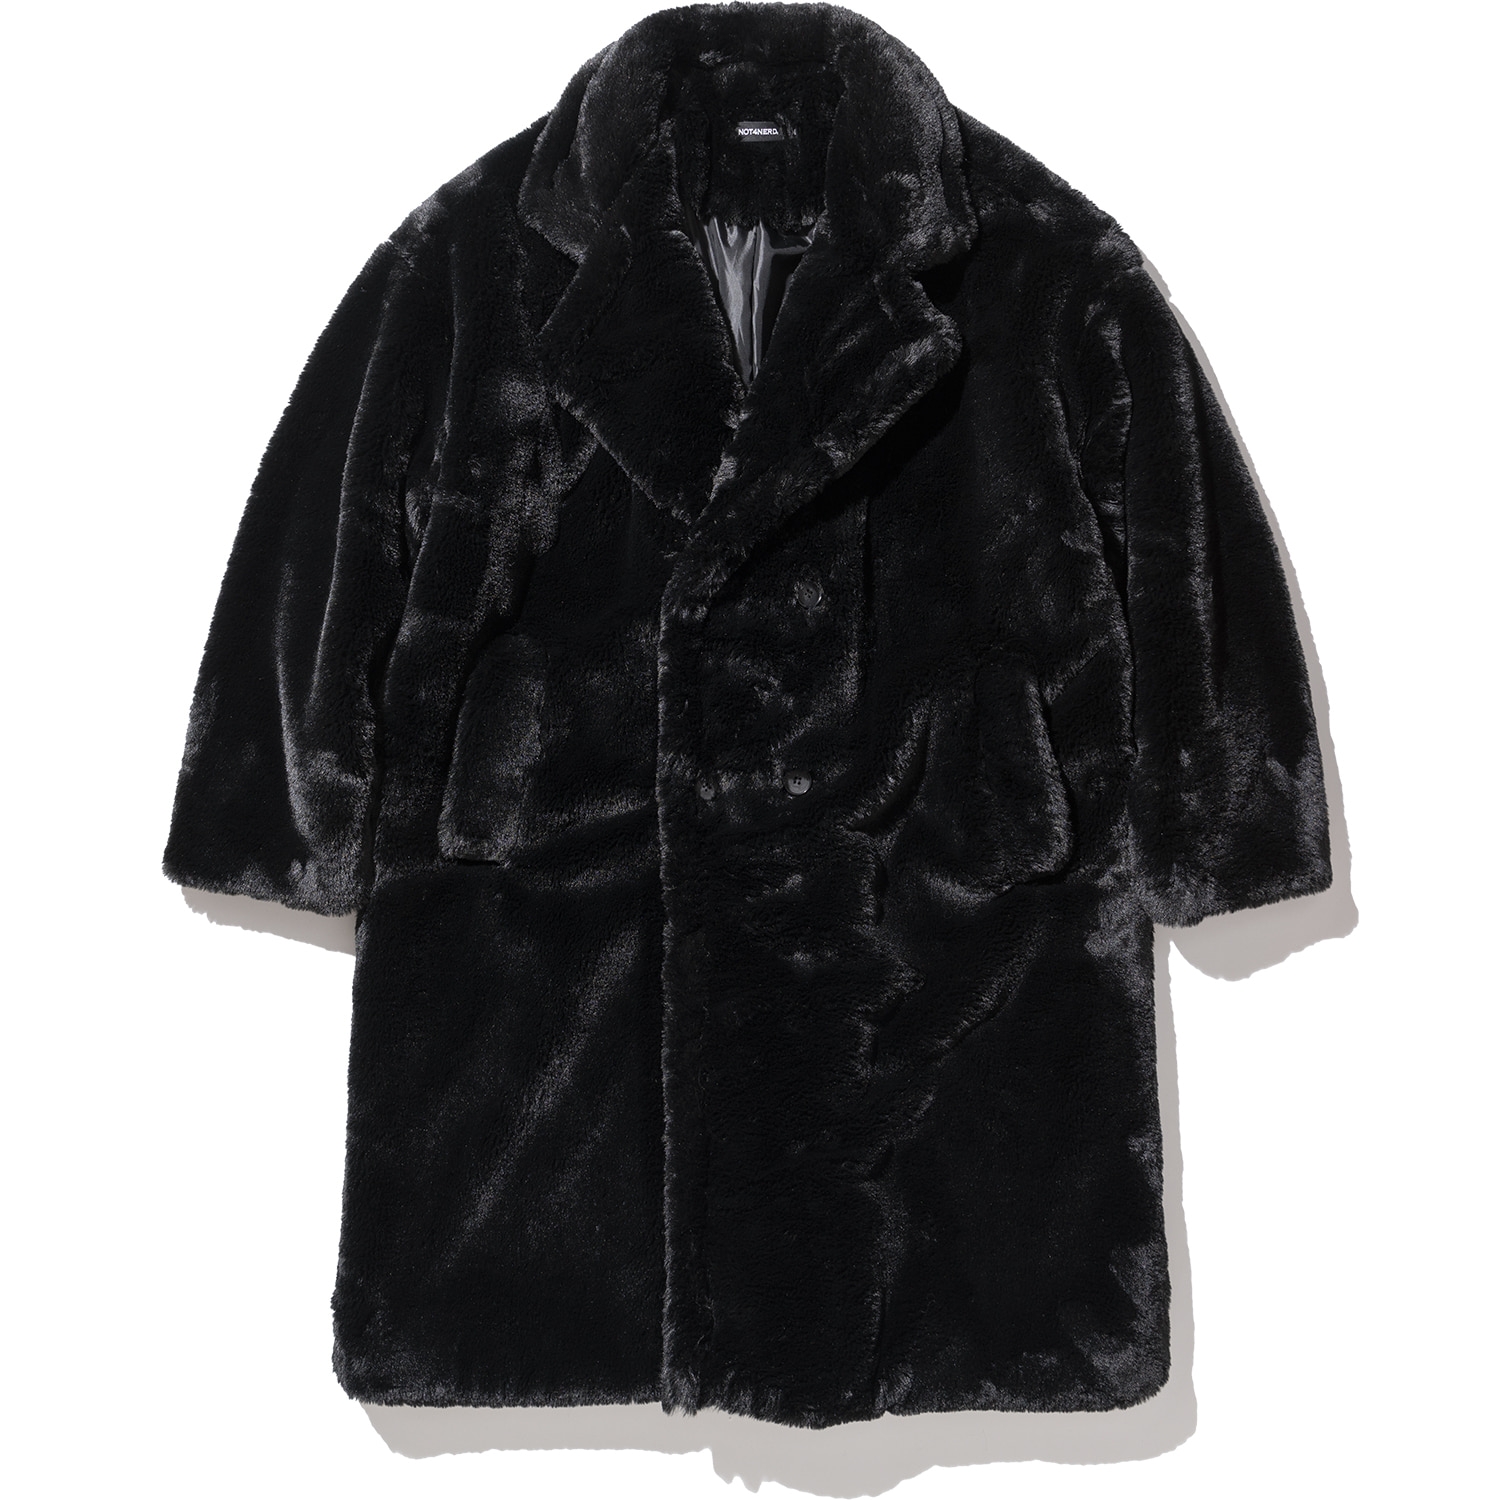 Symbol Fur Coat Black,NOT4NERD